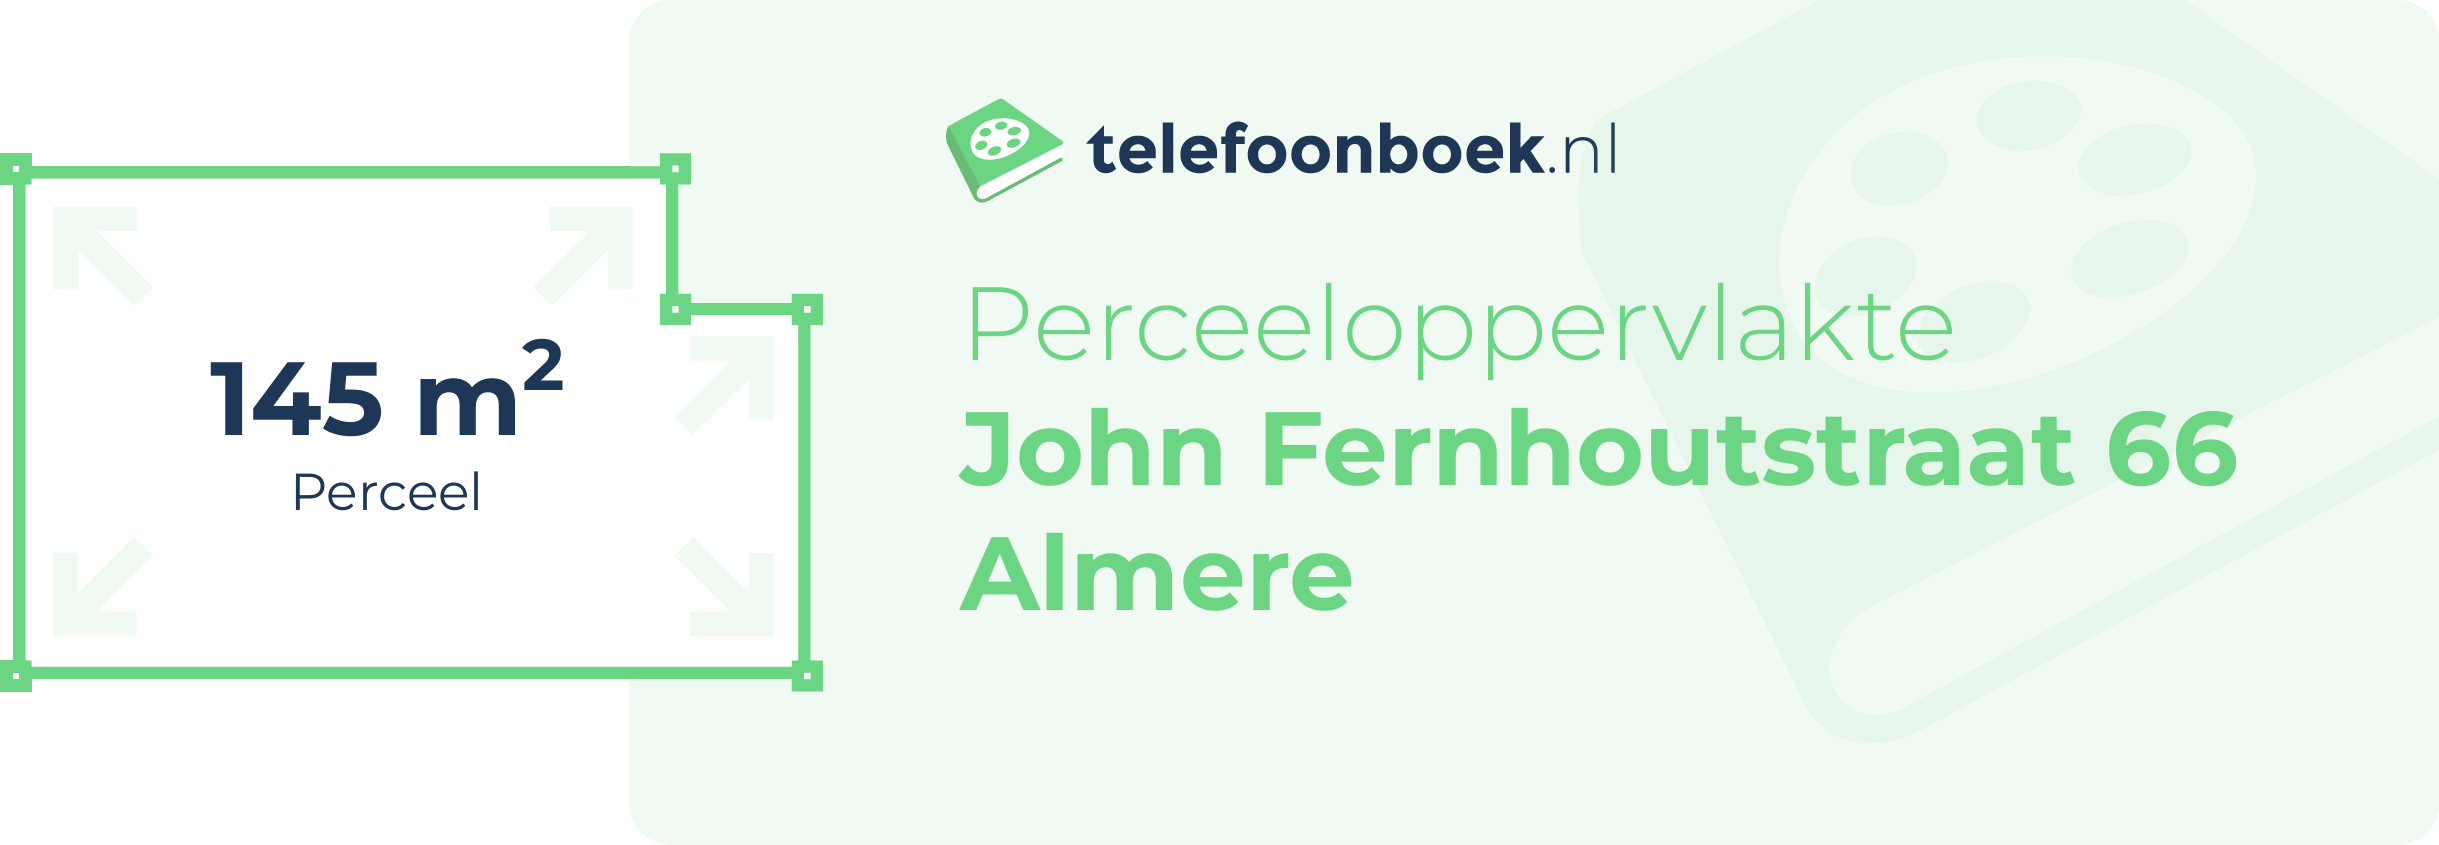 Perceeloppervlakte John Fernhoutstraat 66 Almere